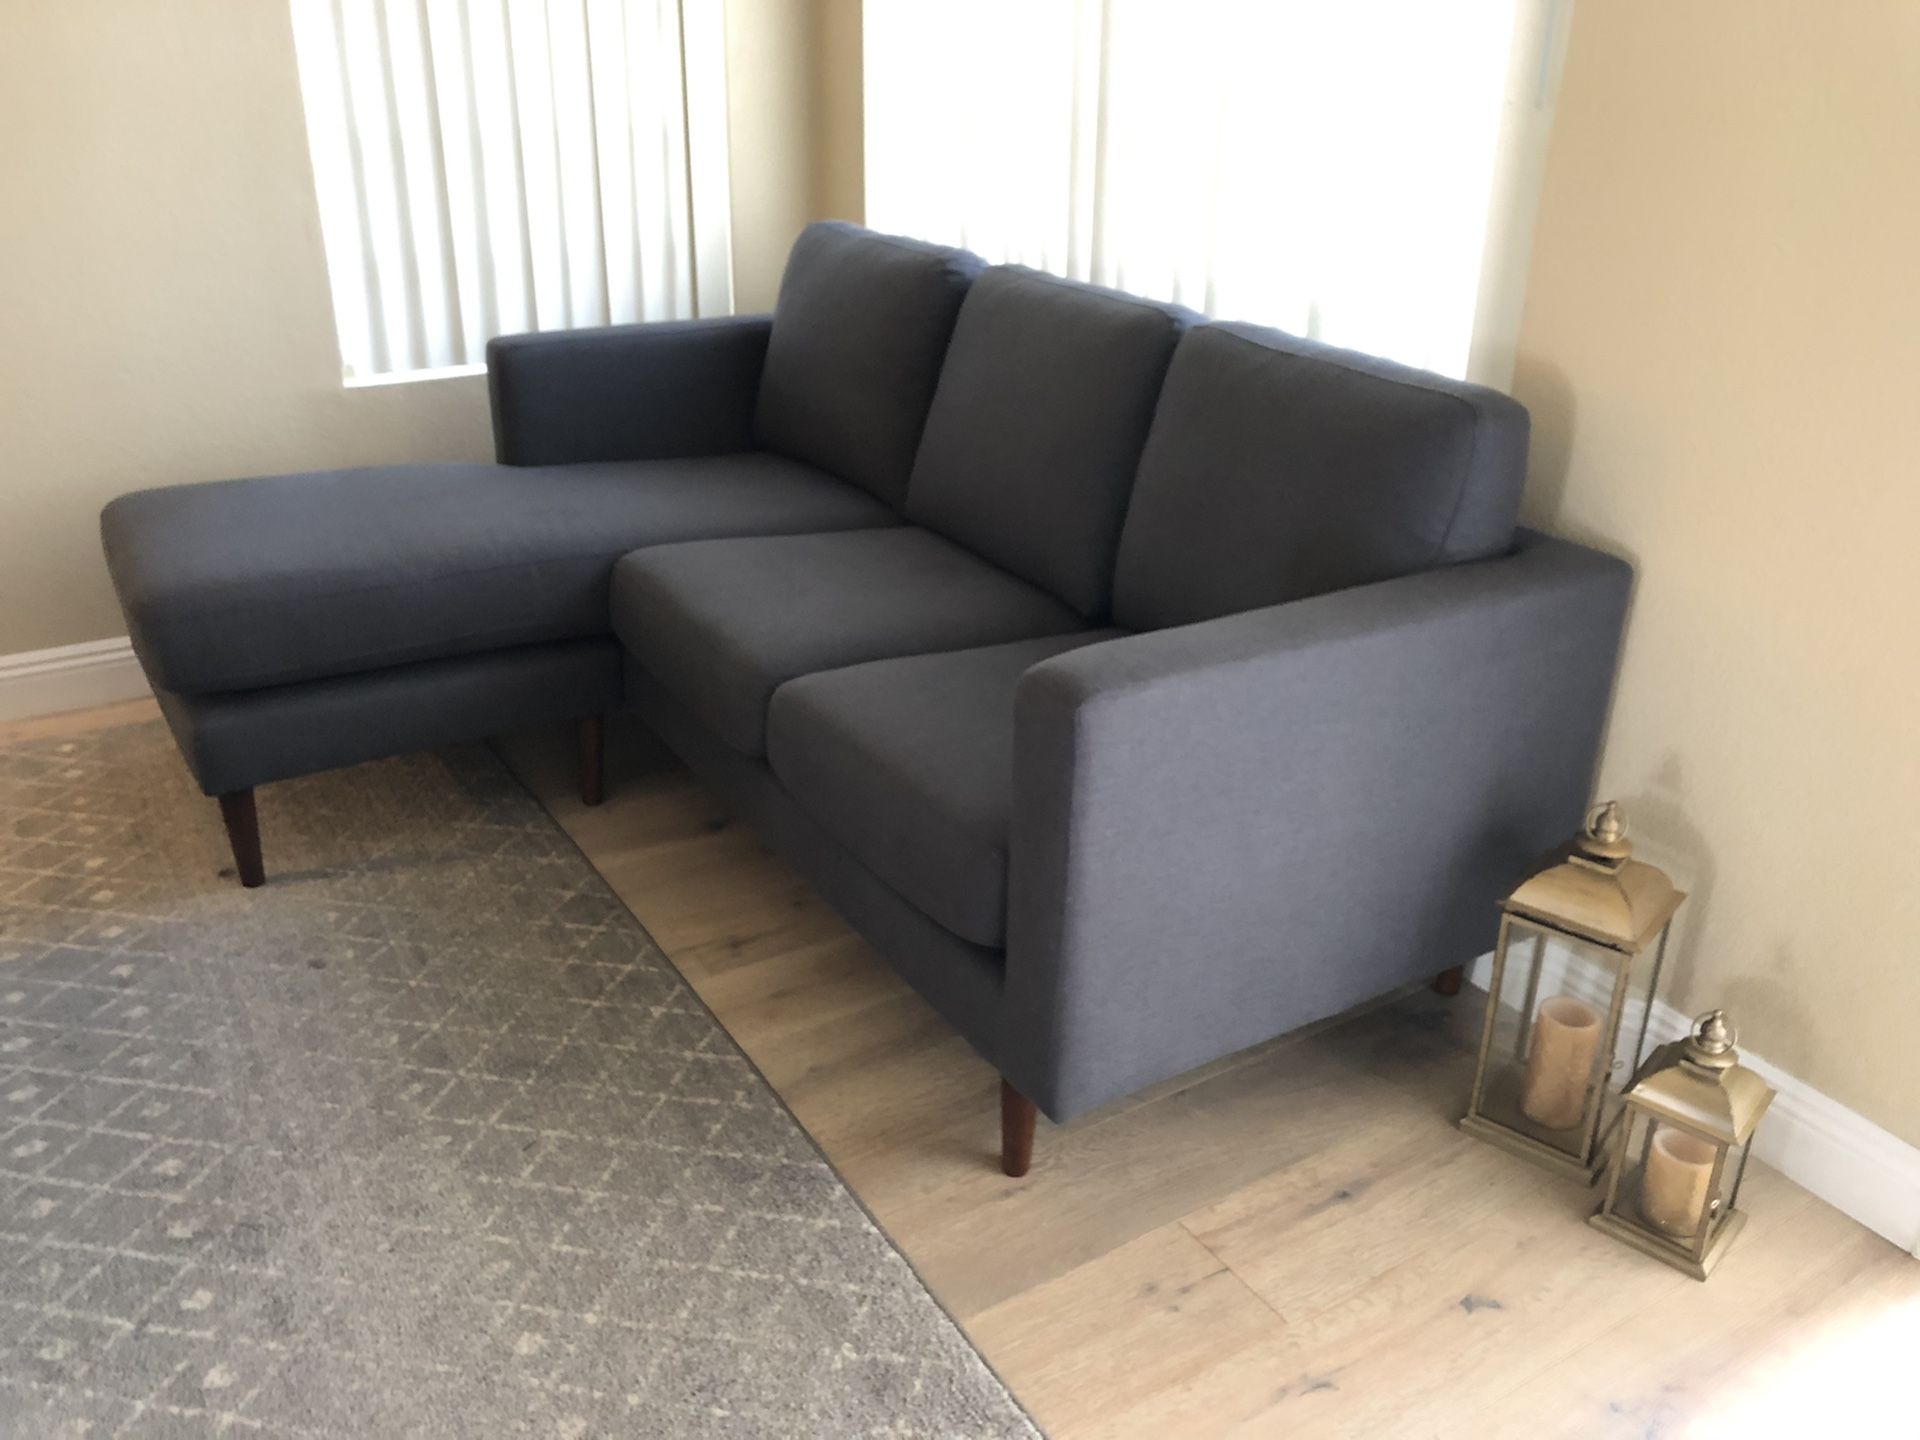 NEW Rivet Revolve MidCentury Modern Gray Upholstered Sofa w/ Reversible Sectional Chaise, 80”W